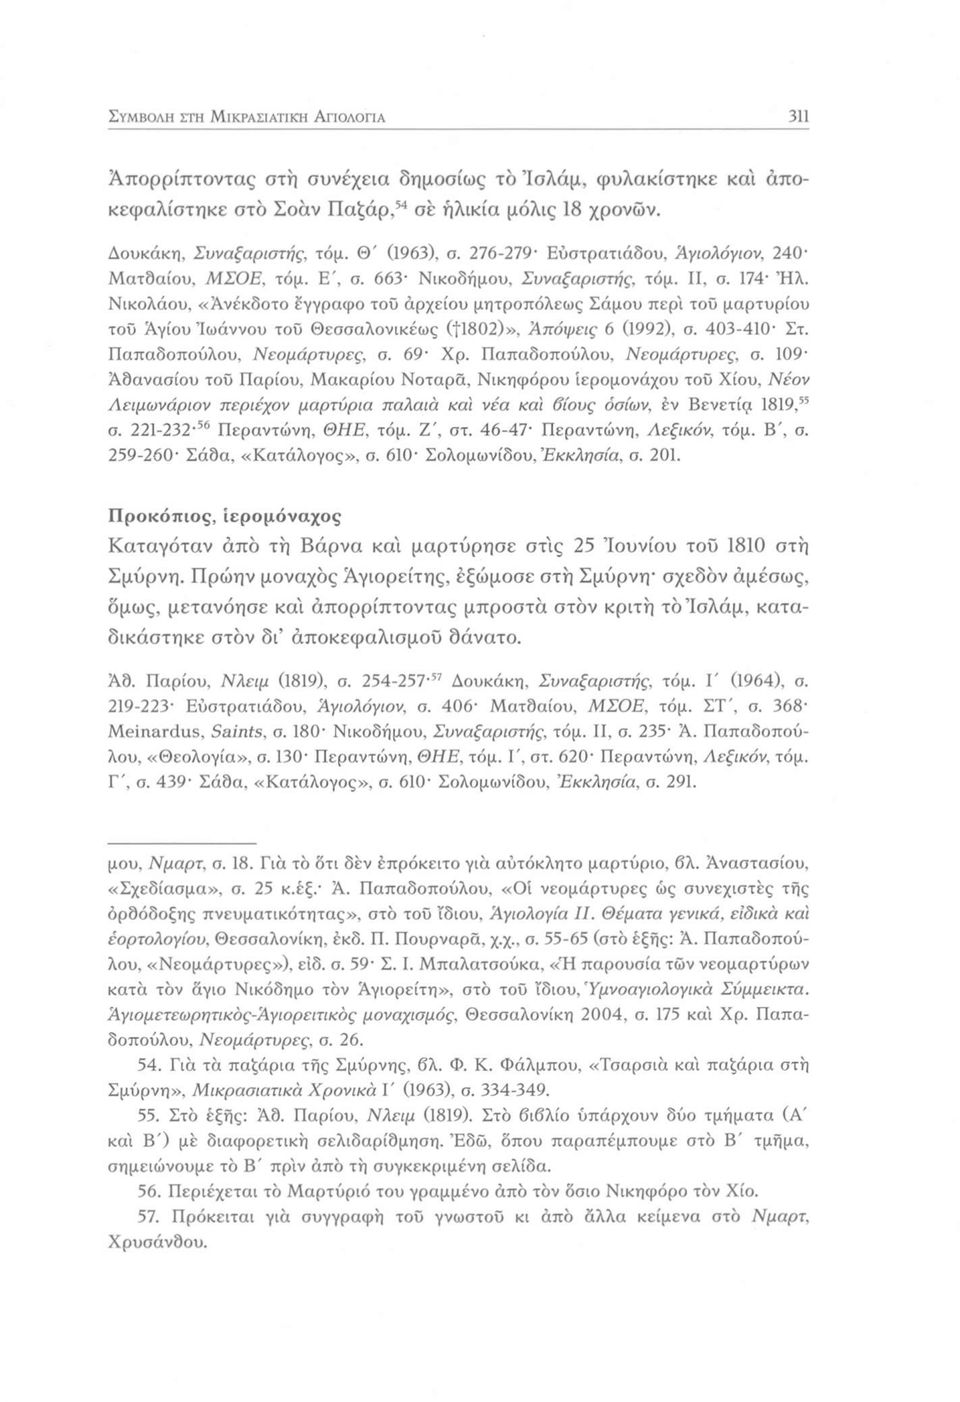 Νικολάου, «Ανέκδοτο έγγραφο του άρχείου μητροπόλεως Σάμου περί του μαρτυρίου του Αγίου Ίωάννου του Θεσσαλονικέως (11802)», Απόψεις 6 (1992), σ. 403-410 Στ. Παπαδοπούλου, Νεομάρτυρες, σ. 69 Χρ.